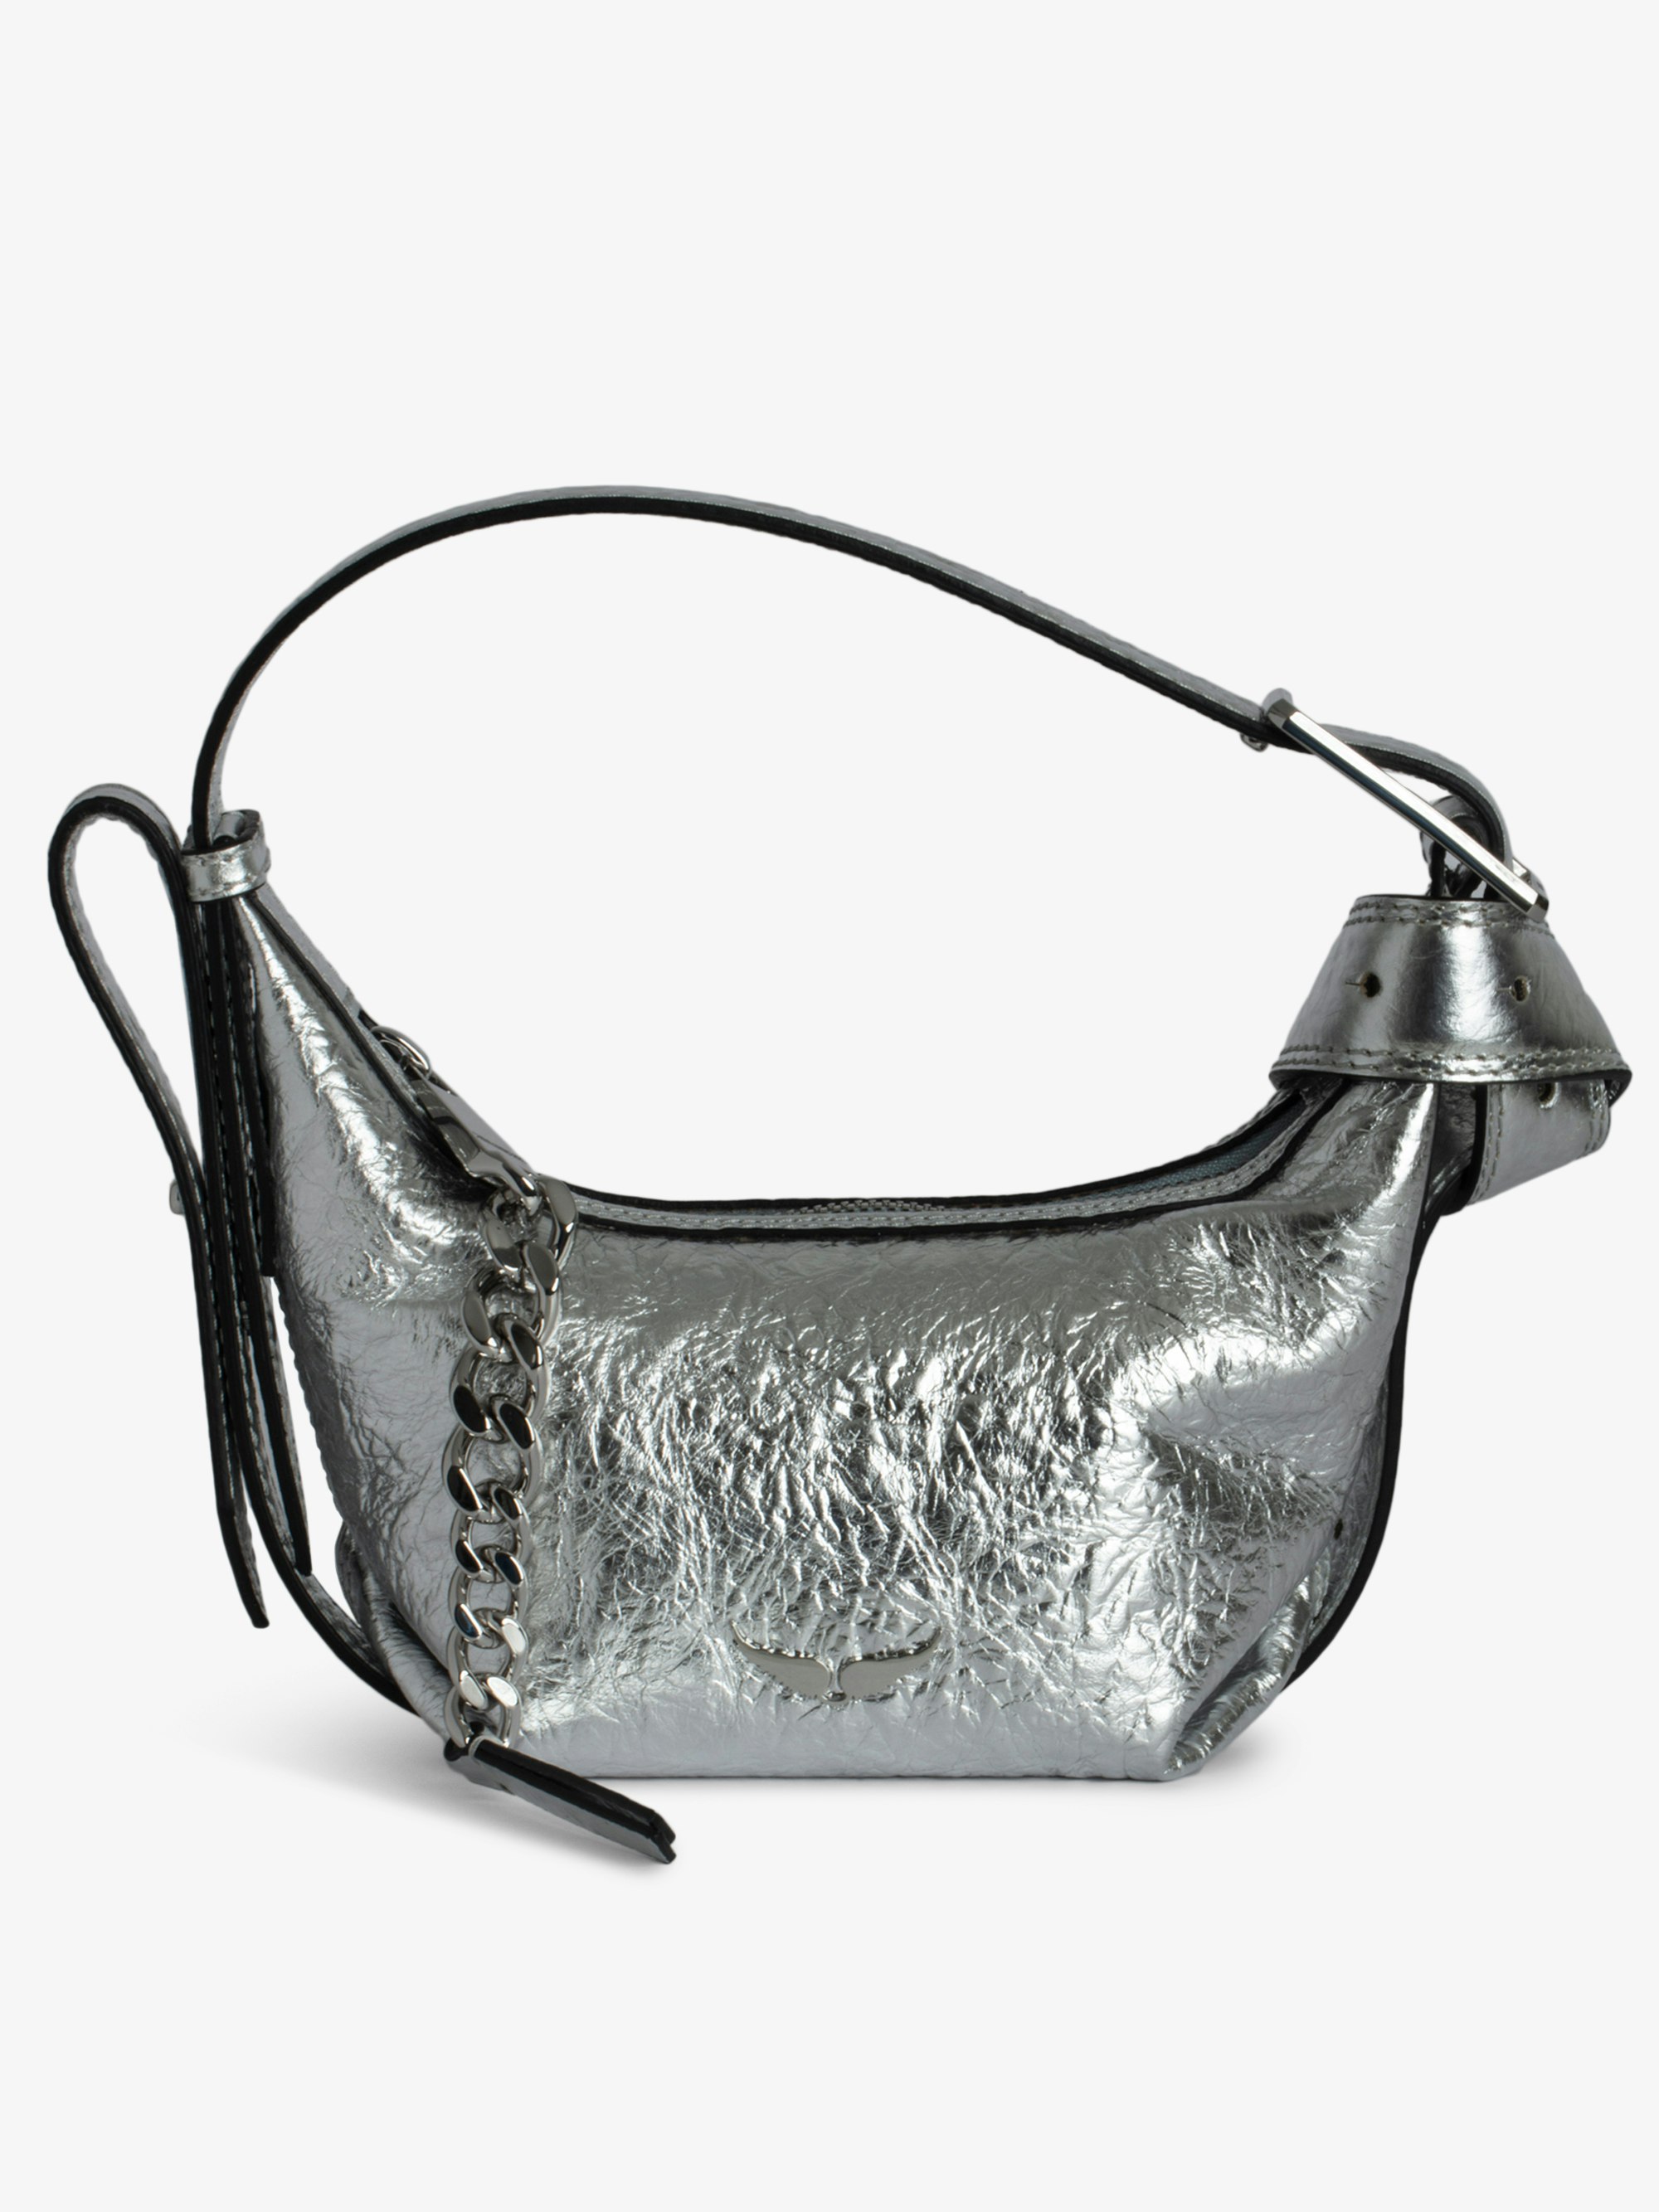 Tasche Le Cecilia XS - Kleine Tasche aus silberfarbenem Metallic-Leder in Knitteroptik mit Schulterriemen und „C“-förmiger Metallschnalle.